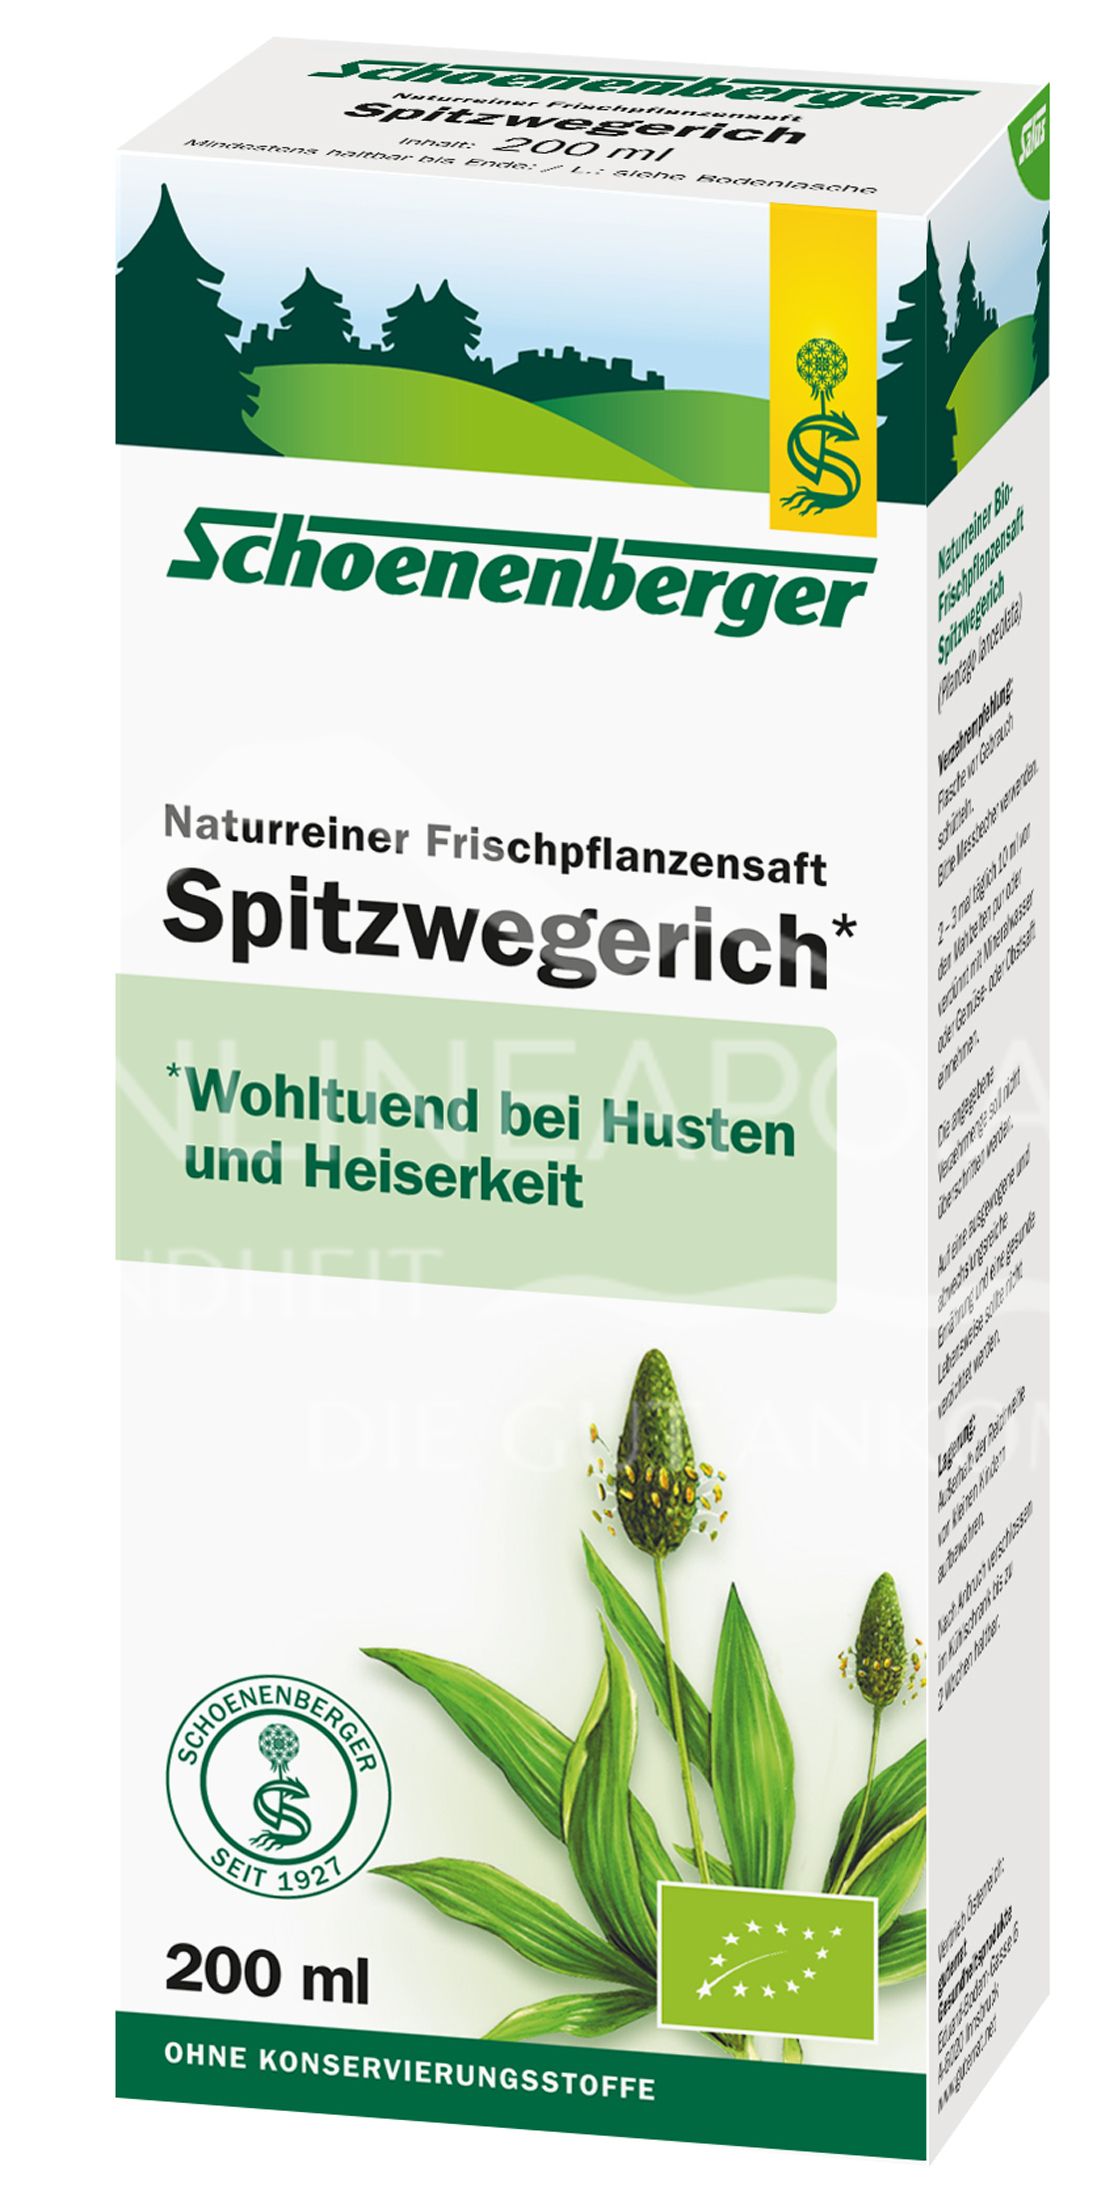 Schoenenberger Spitzwegerich Naturreiner Frischpflanzensaft (BIO)